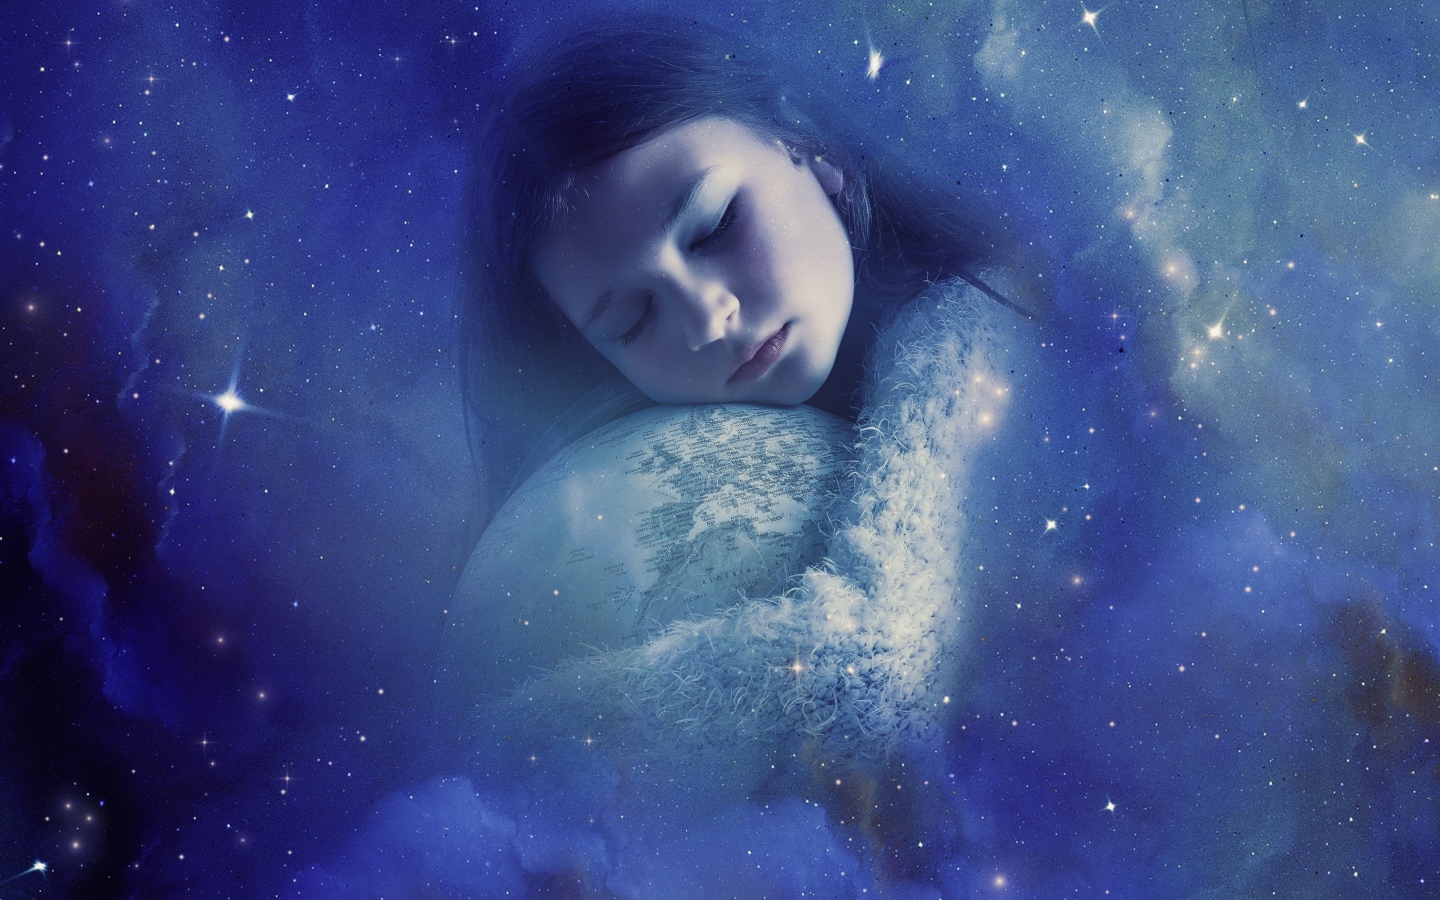 Little girl hugging a globe in a dream